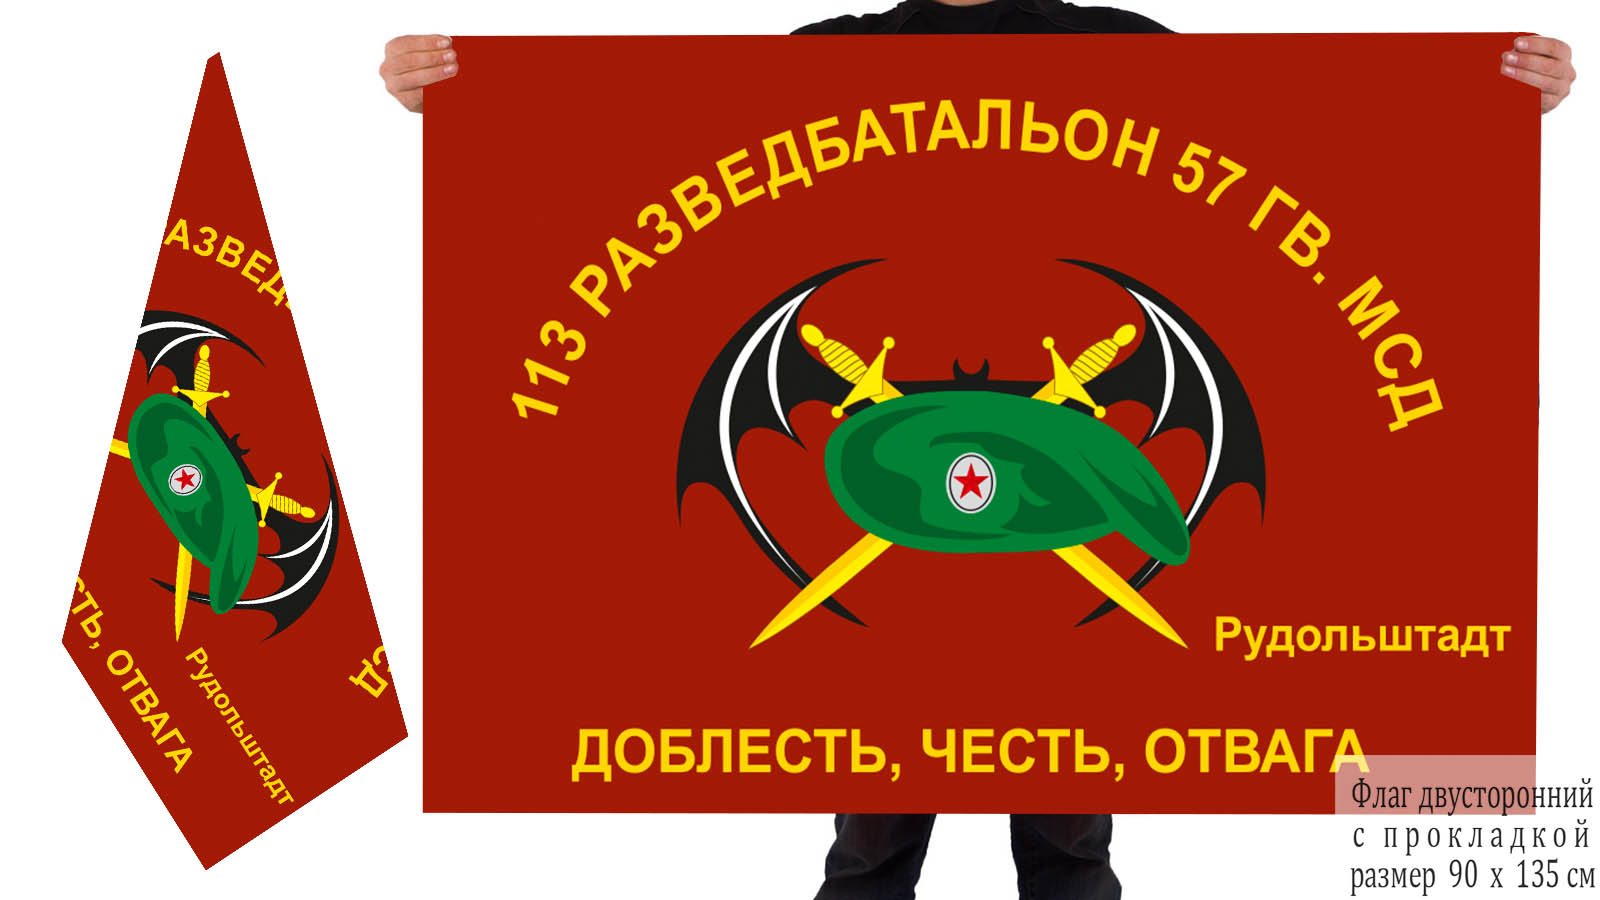 Двусторонний флаг 113 ОРБ 57 Гв. МСД 